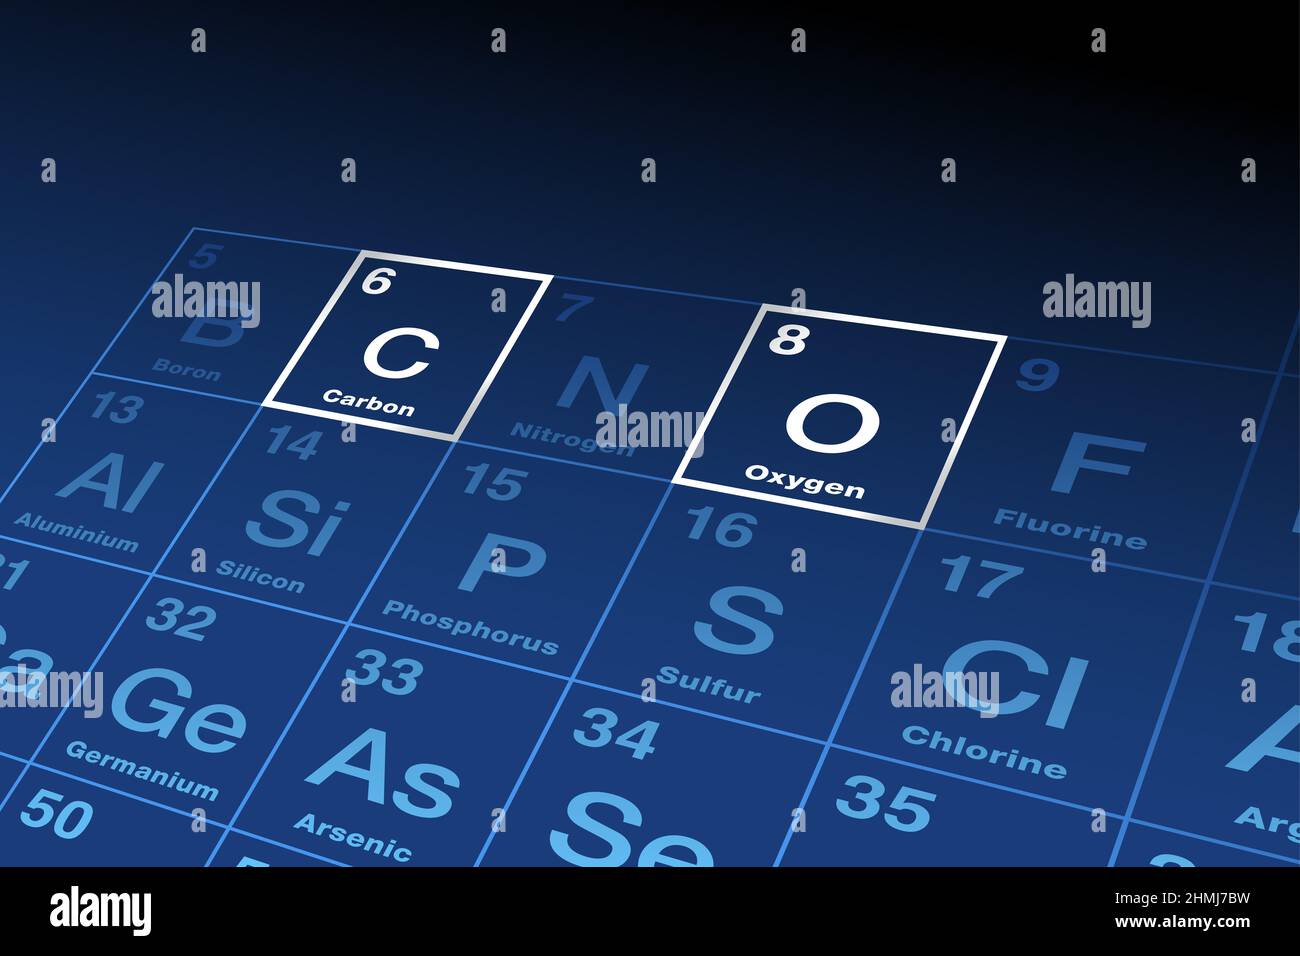 Carbone et oxygène, éléments chimiques sur le tableau périodique des éléments, avec les symboles C et O, et les numéros atomiques 6 et 8. Banque D'Images